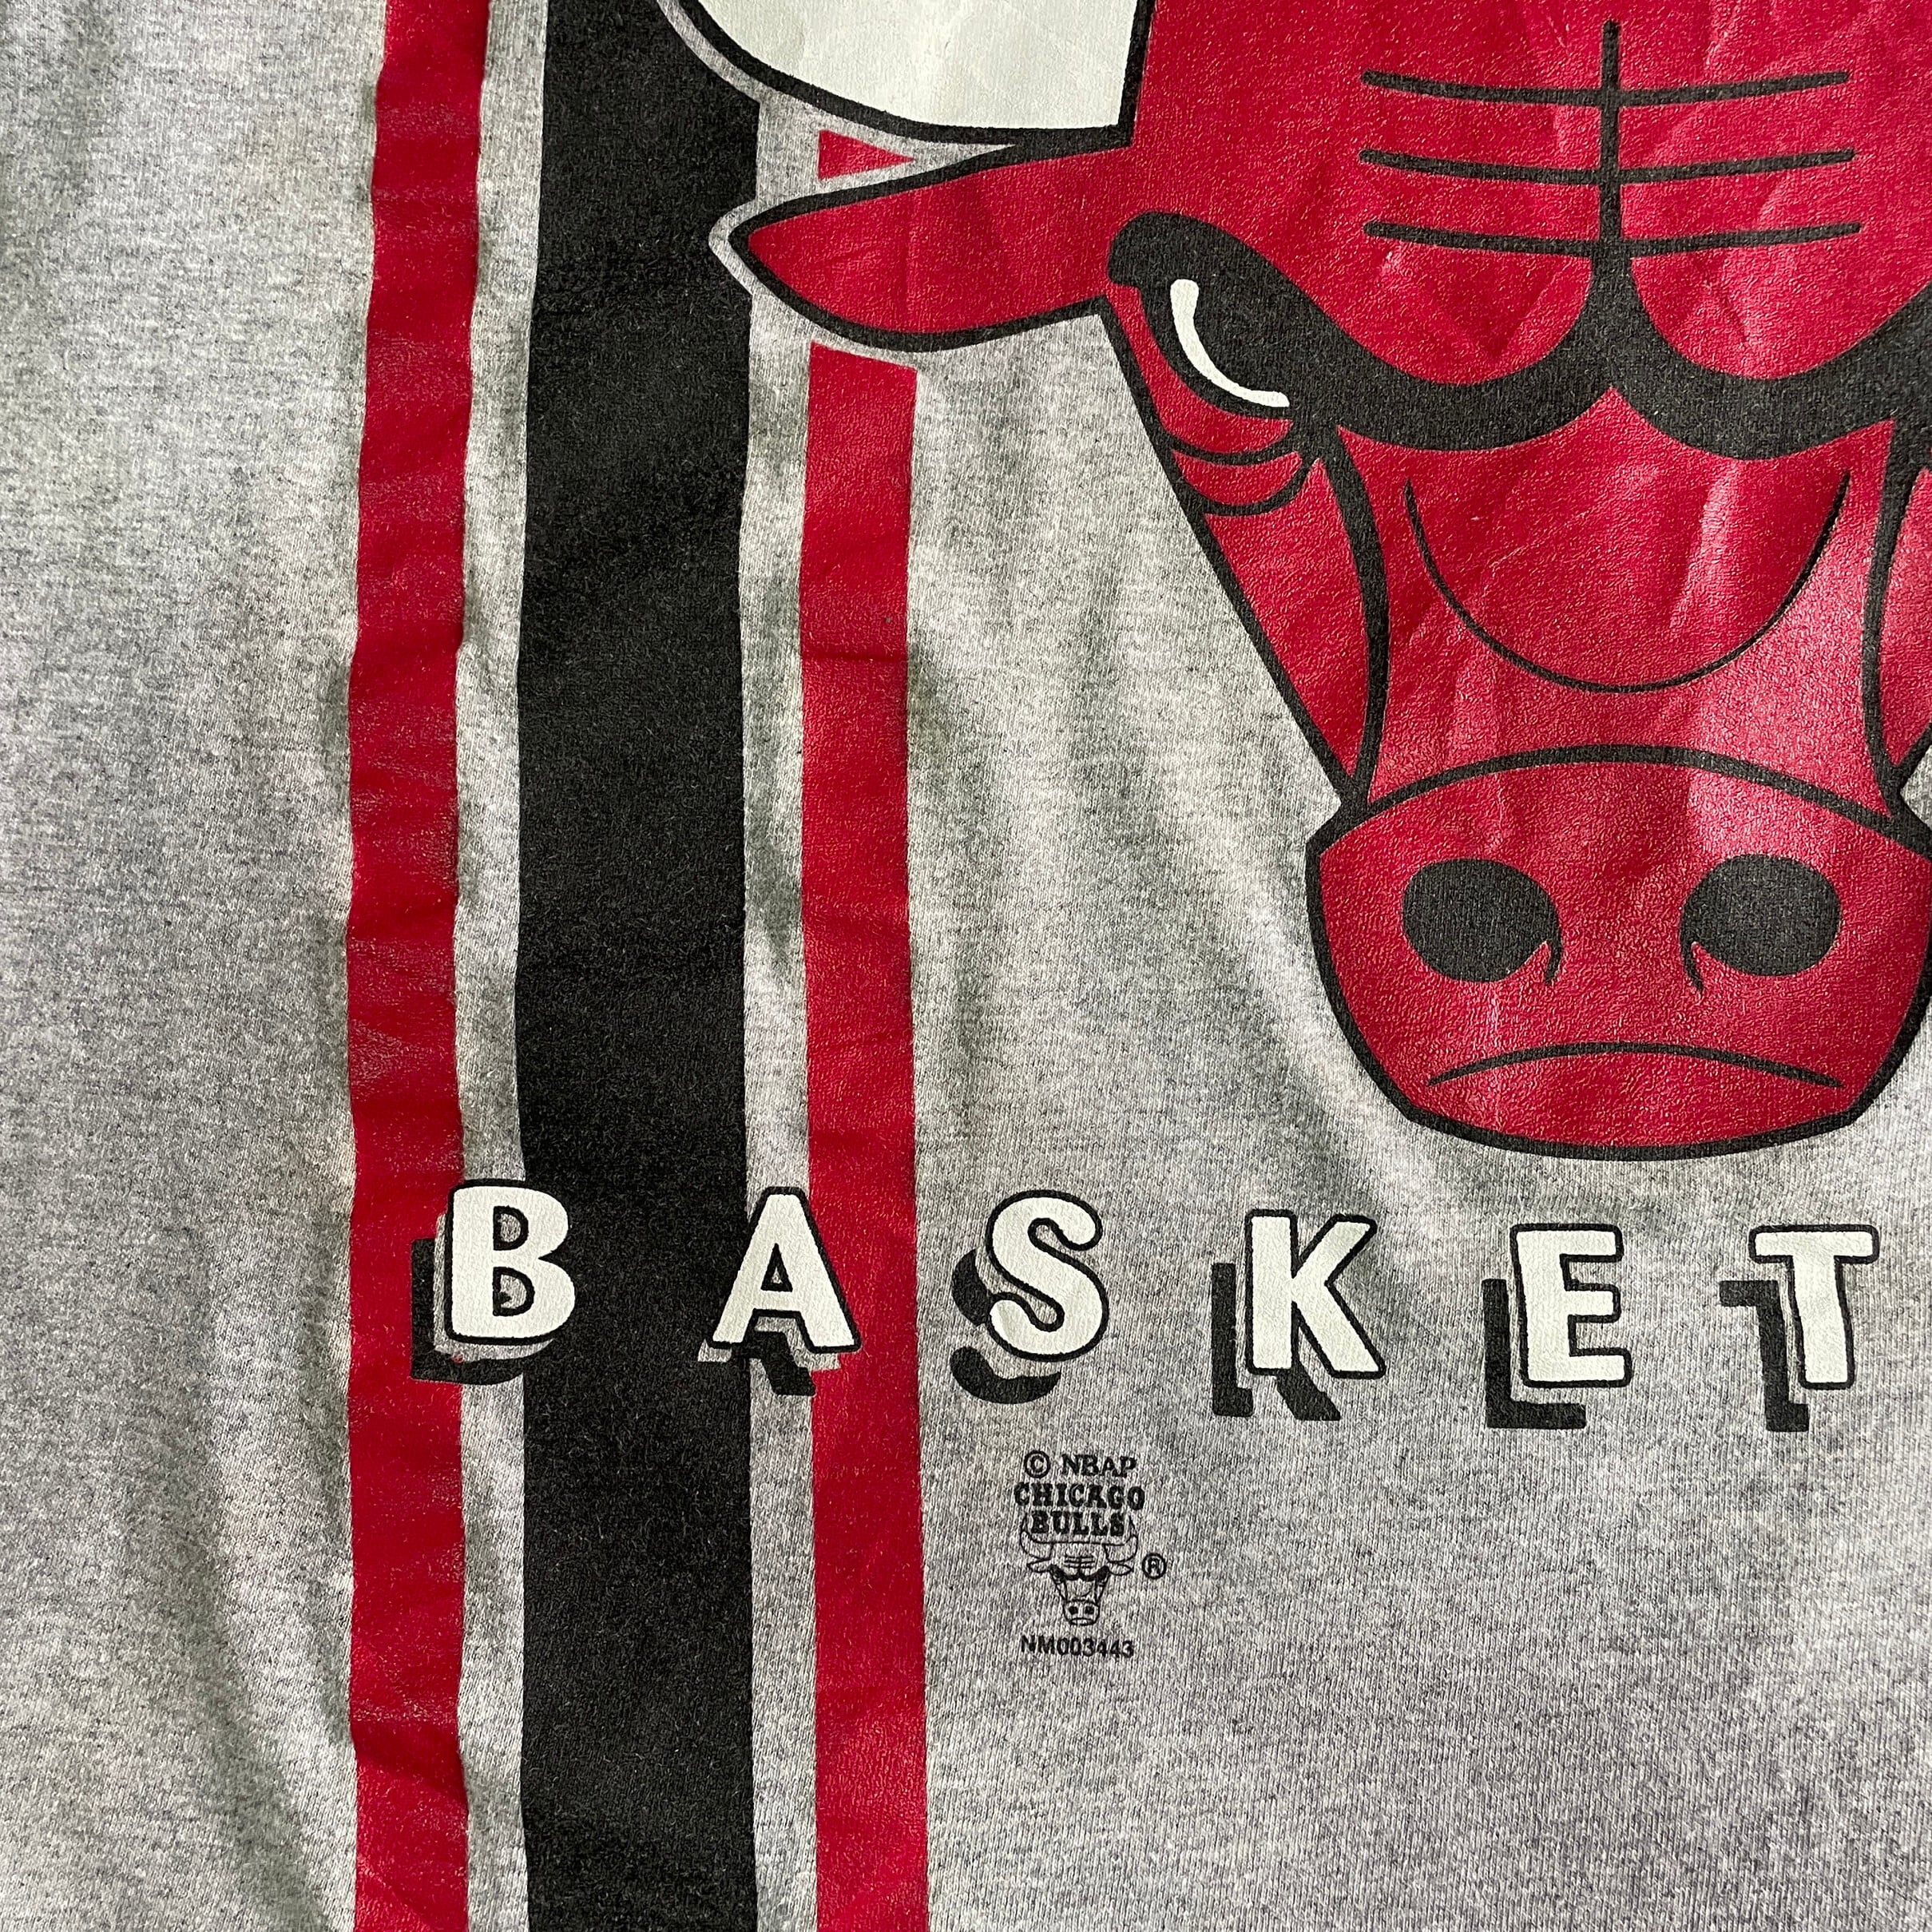 90年代 ジャージーズ Jerzees NBA CHICAGOBULLS シカゴブルズ スポーツプリントTシャツ USA製 メンズL ヴィンテージ /eaa346666